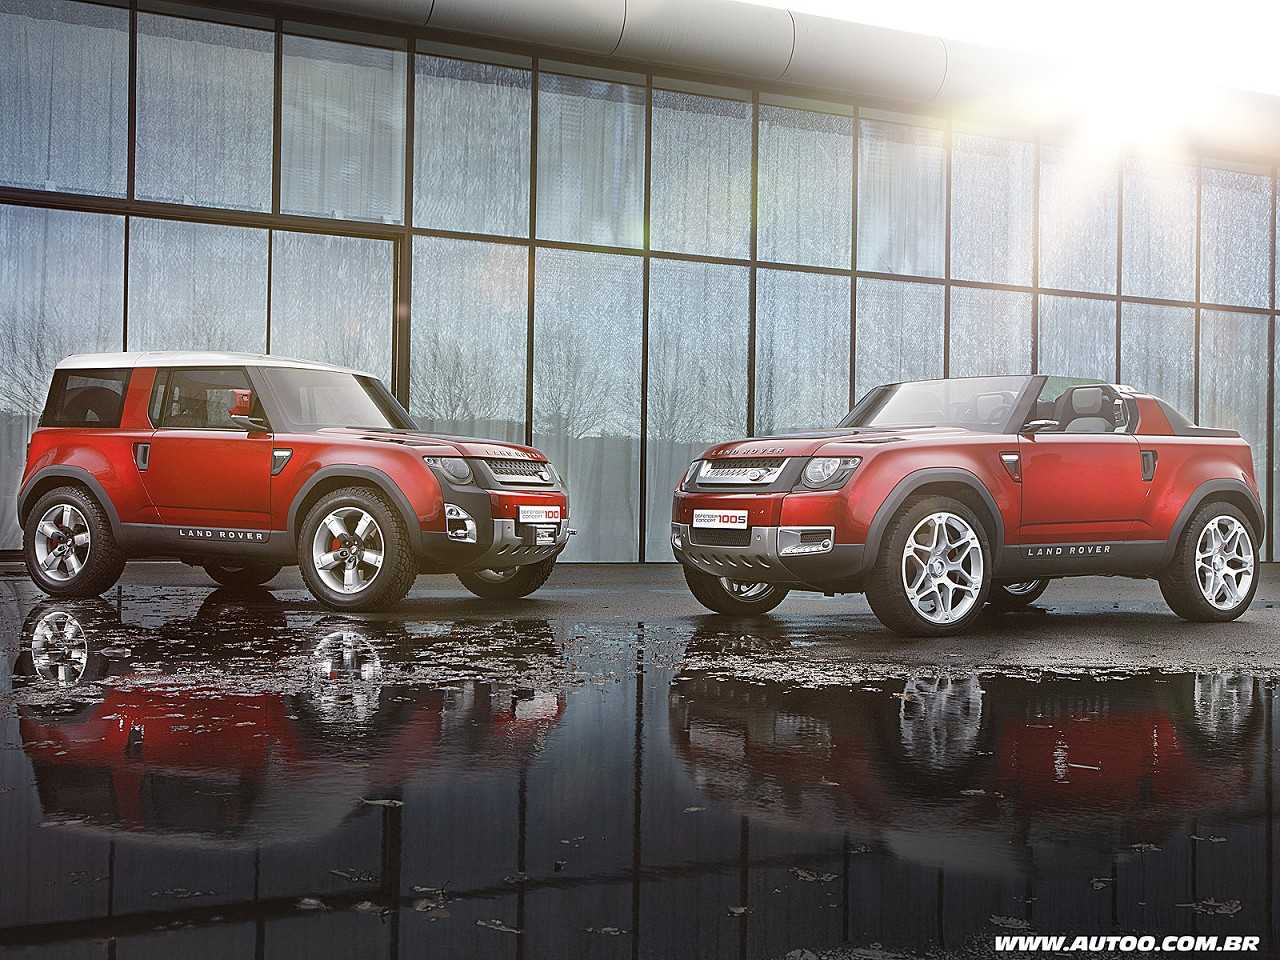 Acima o Defender Concept 100, que antecipa o visual da nova gerao de um dos modelos mais emblemticos da Land Rover